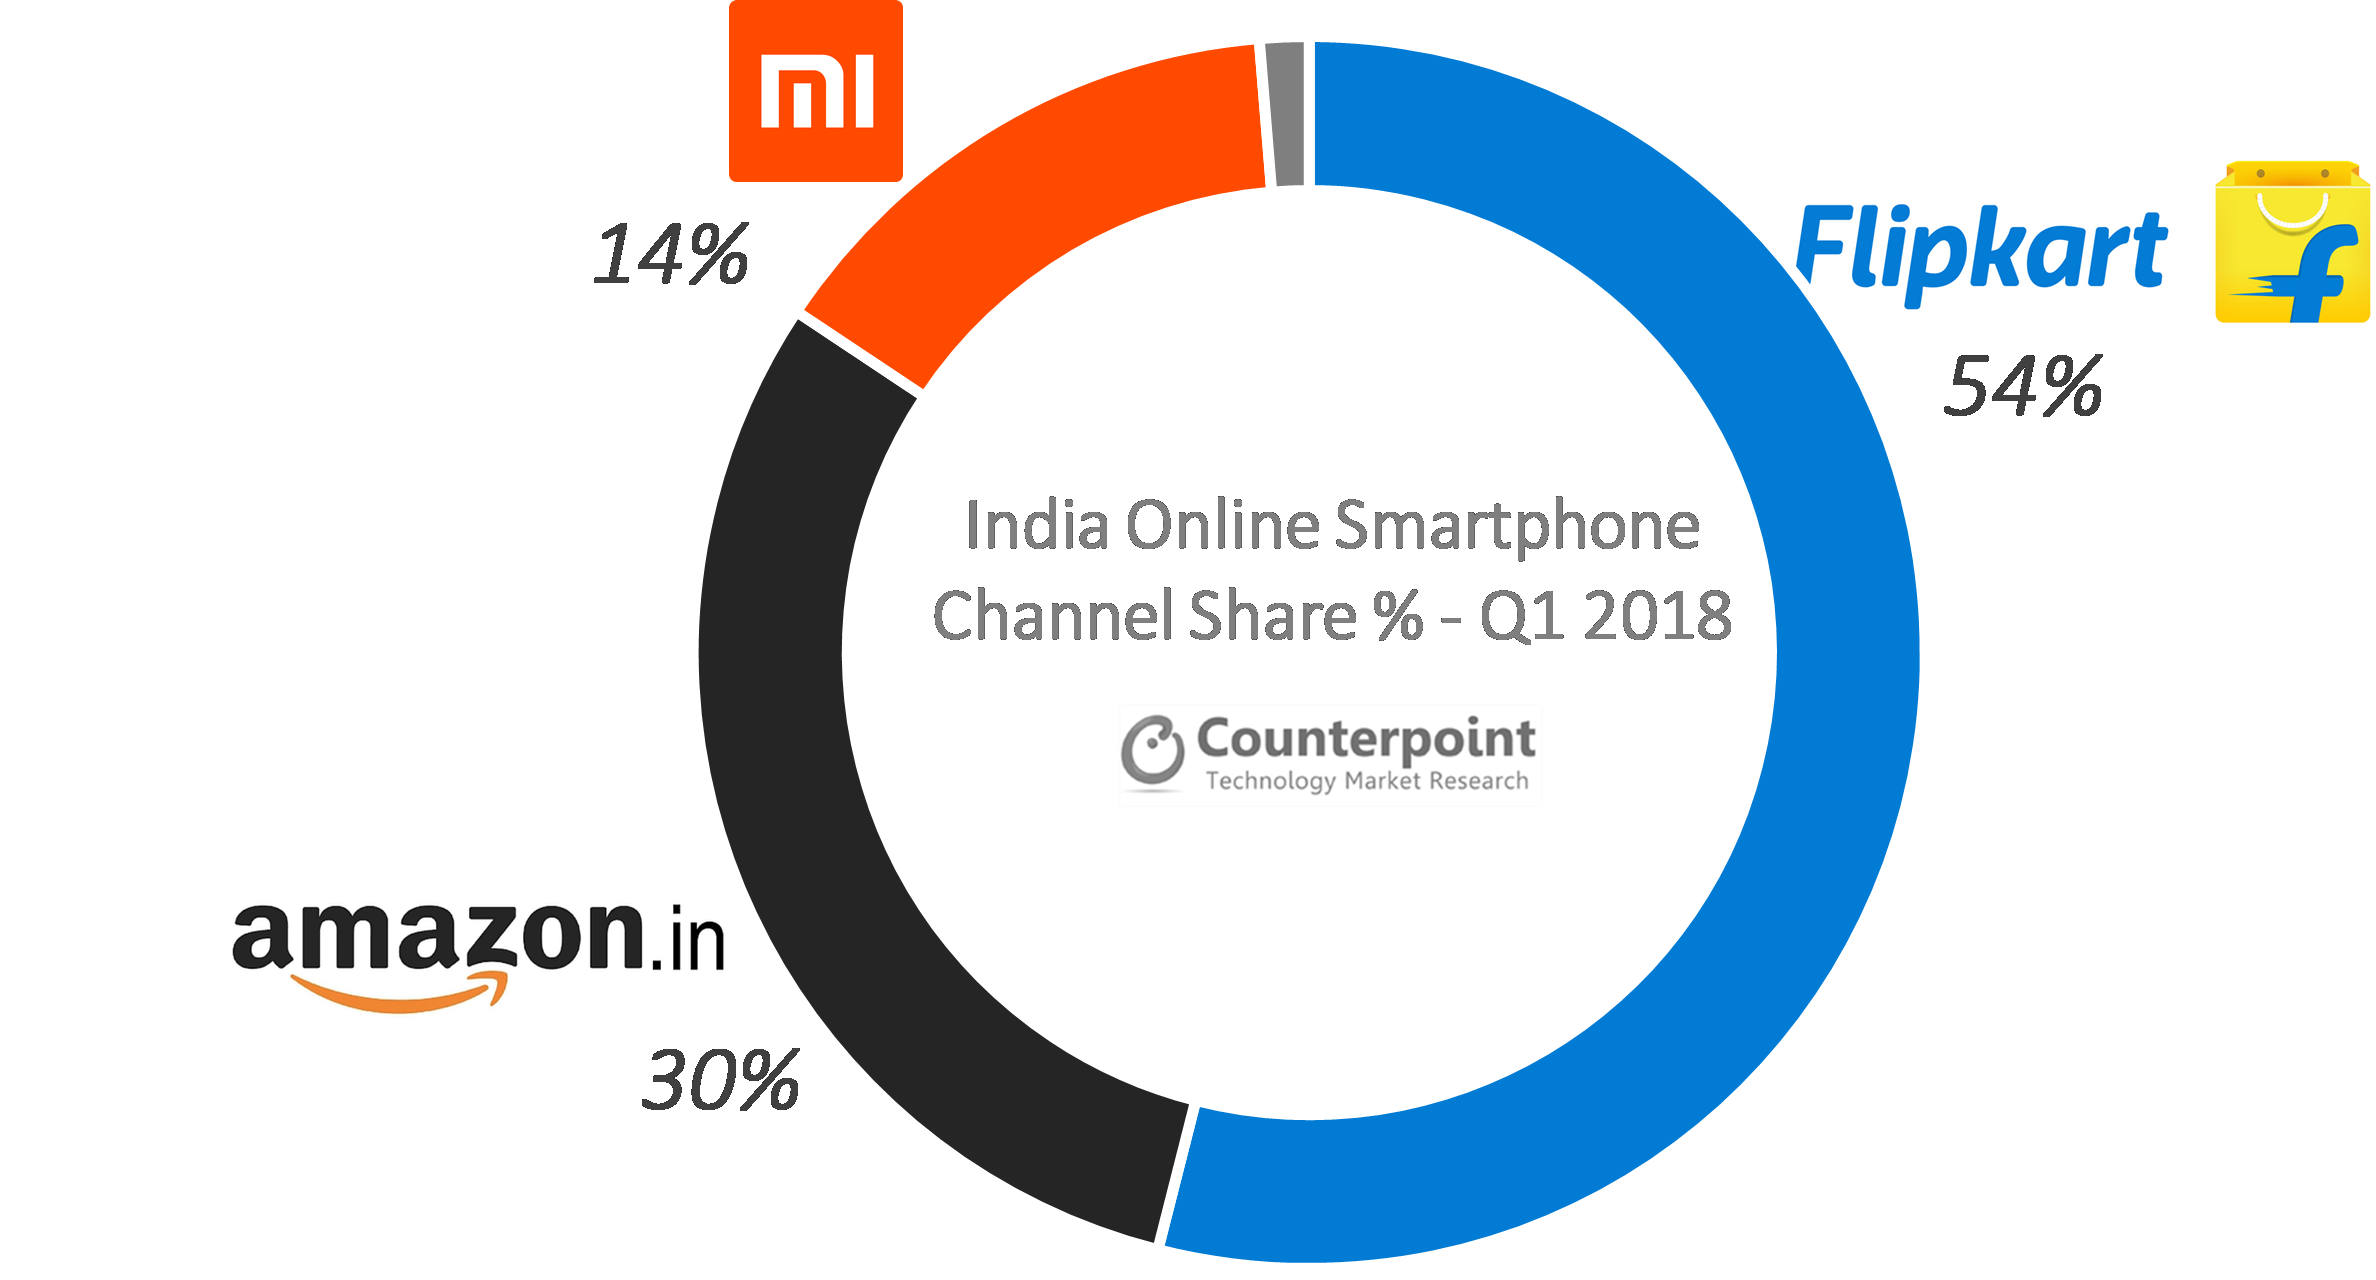 印度在线智能手机频道分享％Q1 2018